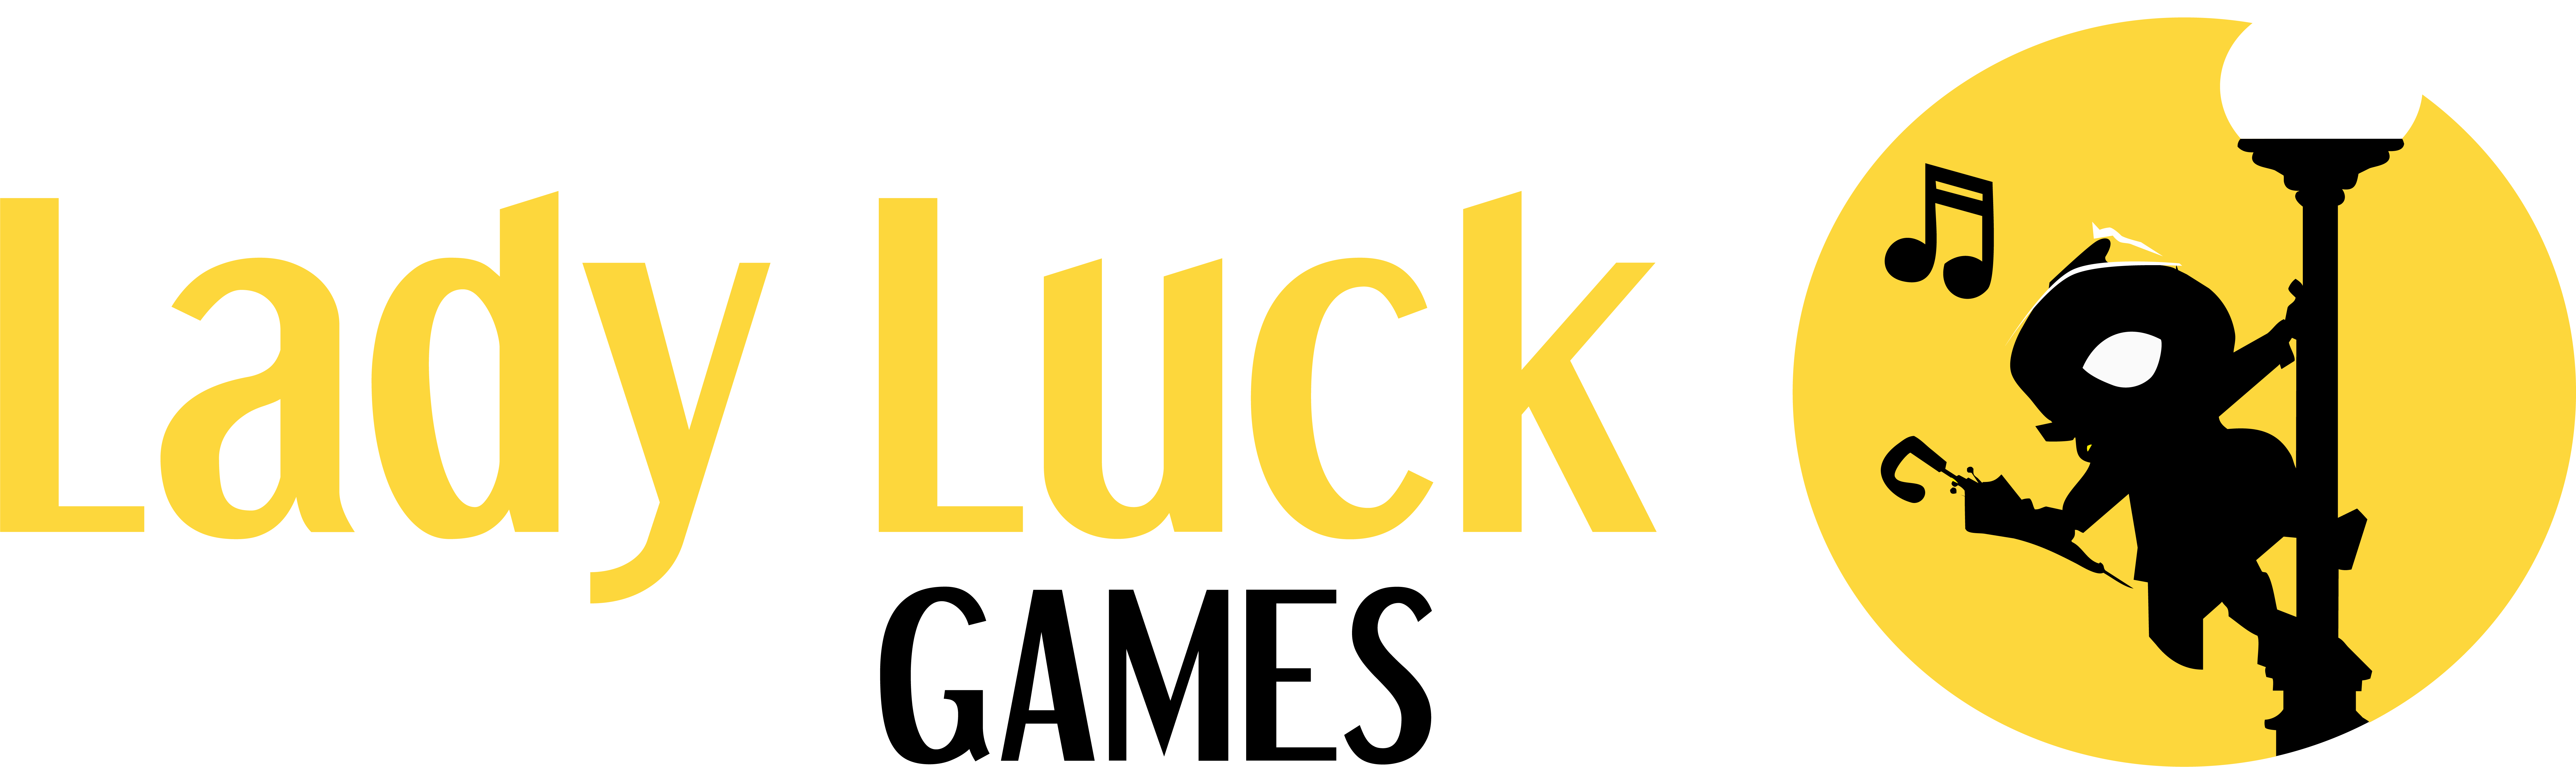 Lady Luck Games trò chơi